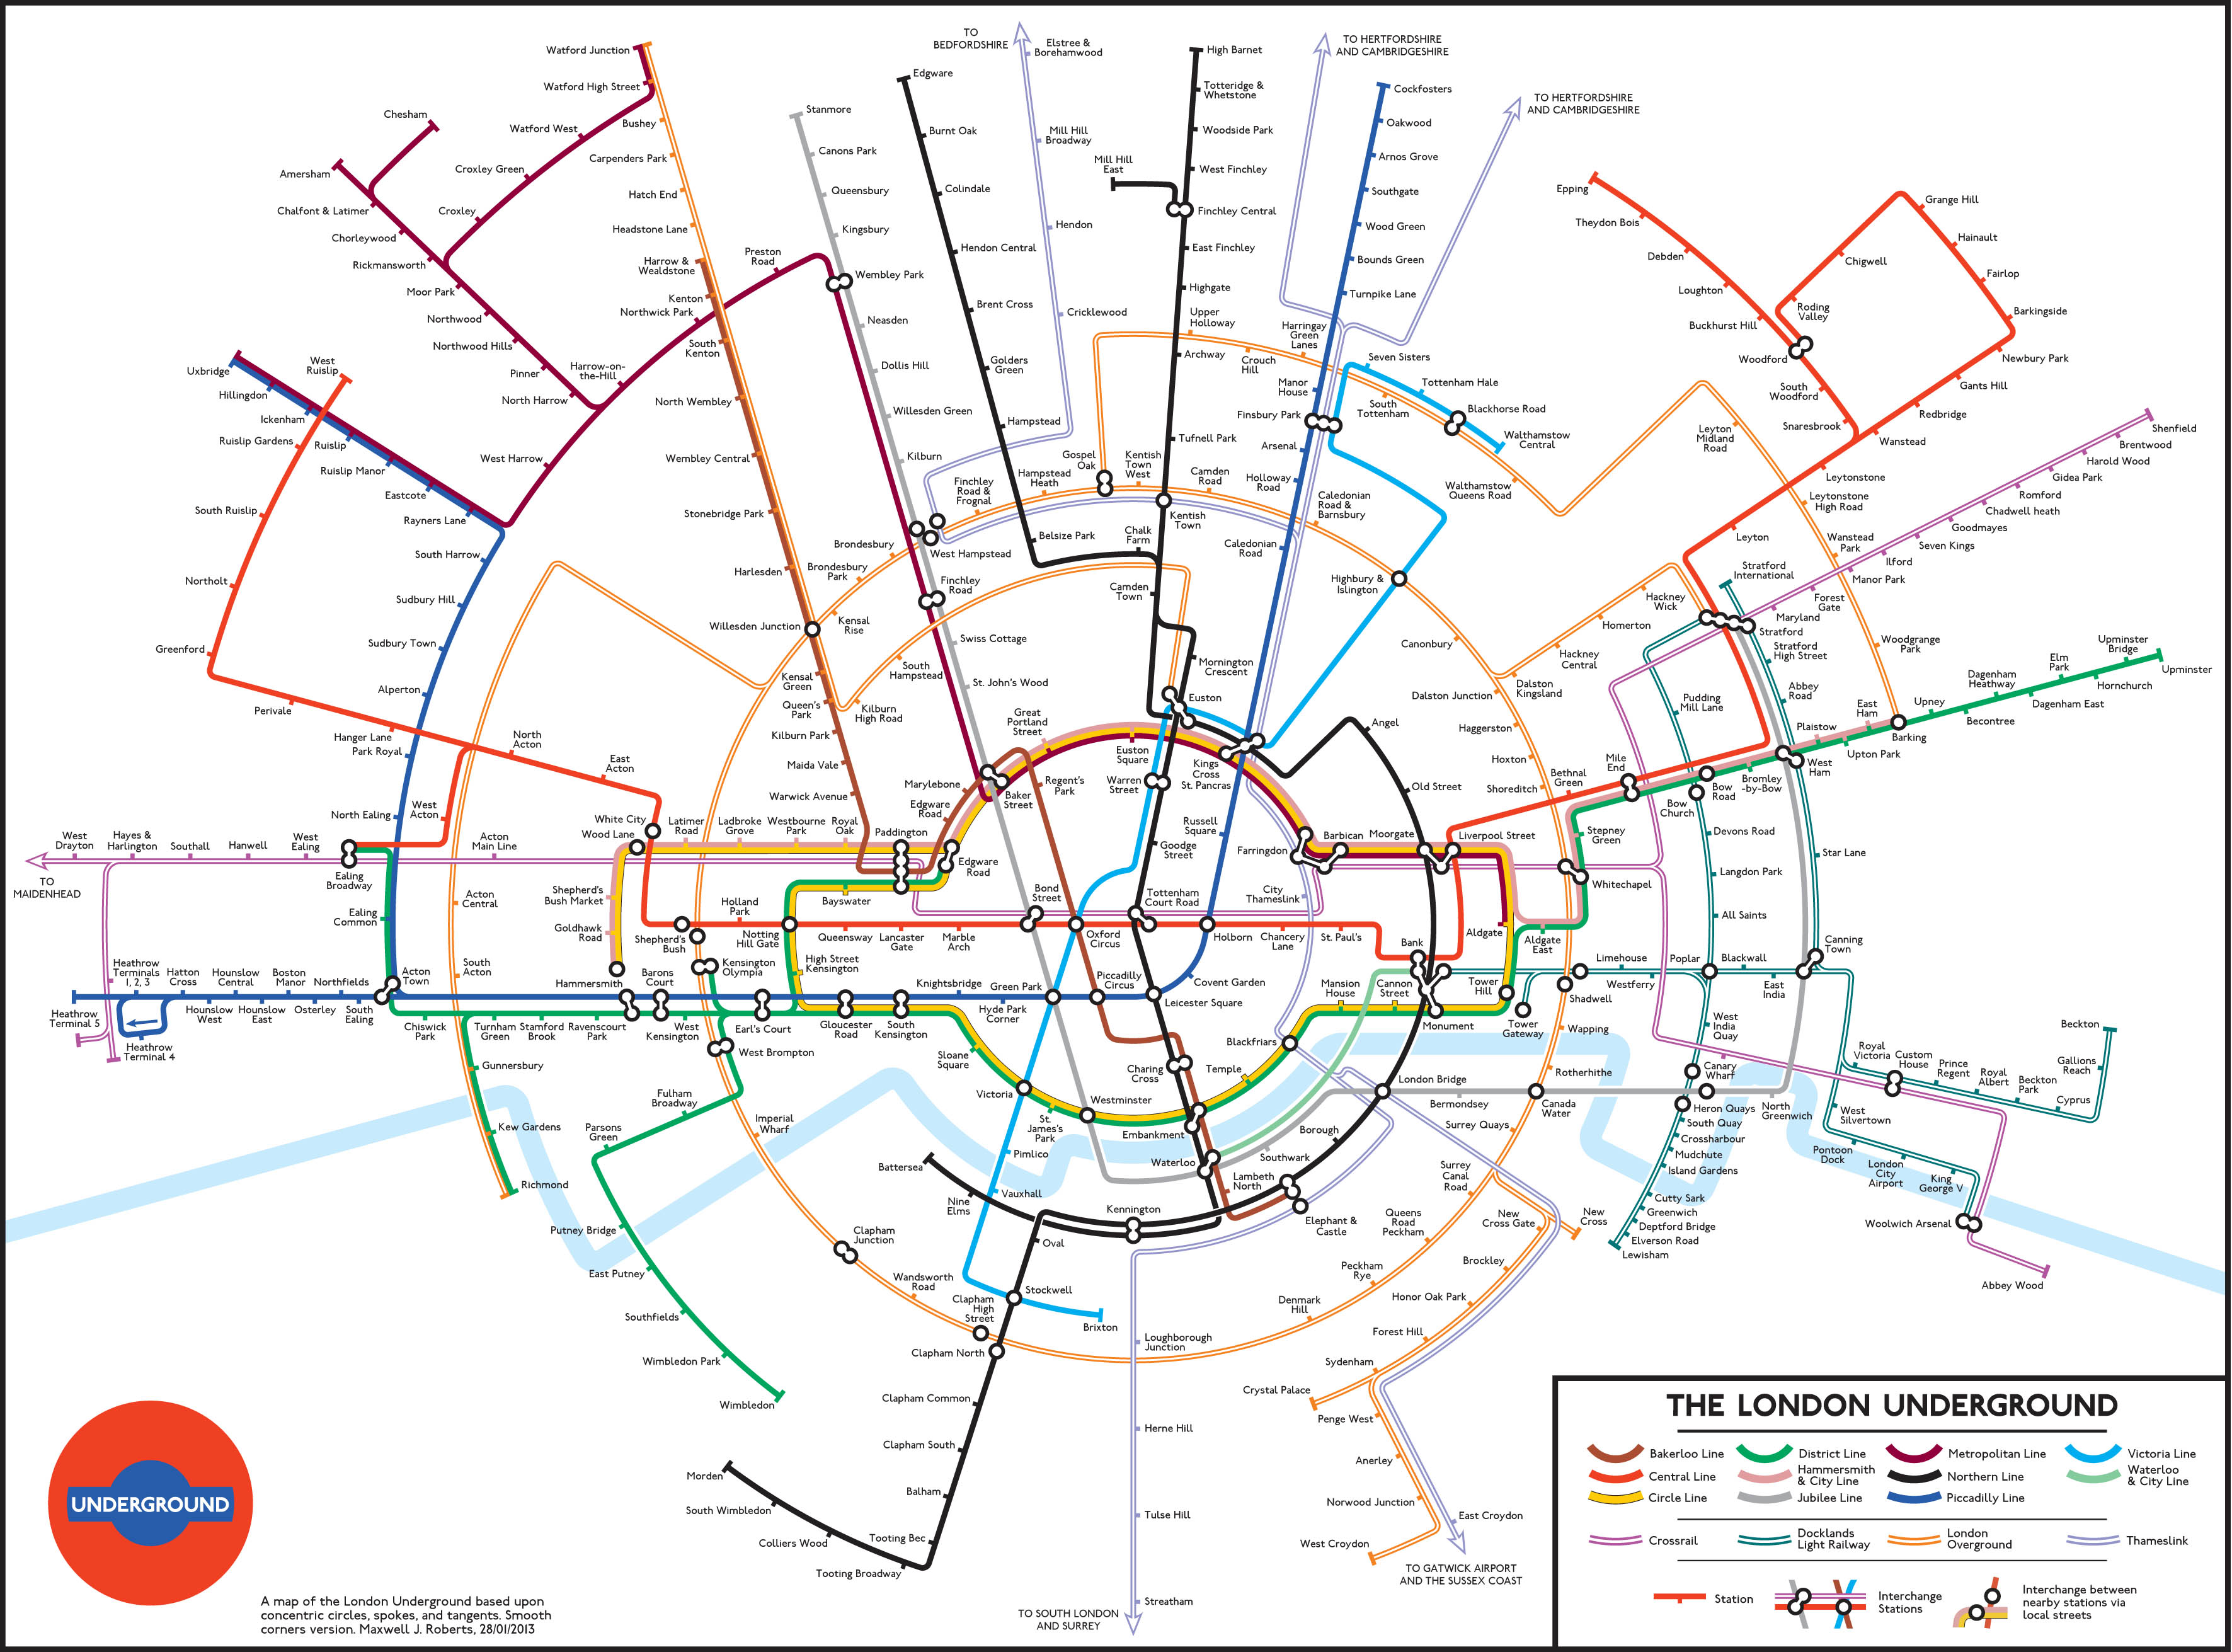 1379x926px London Underground (241.9 KB).04.2015